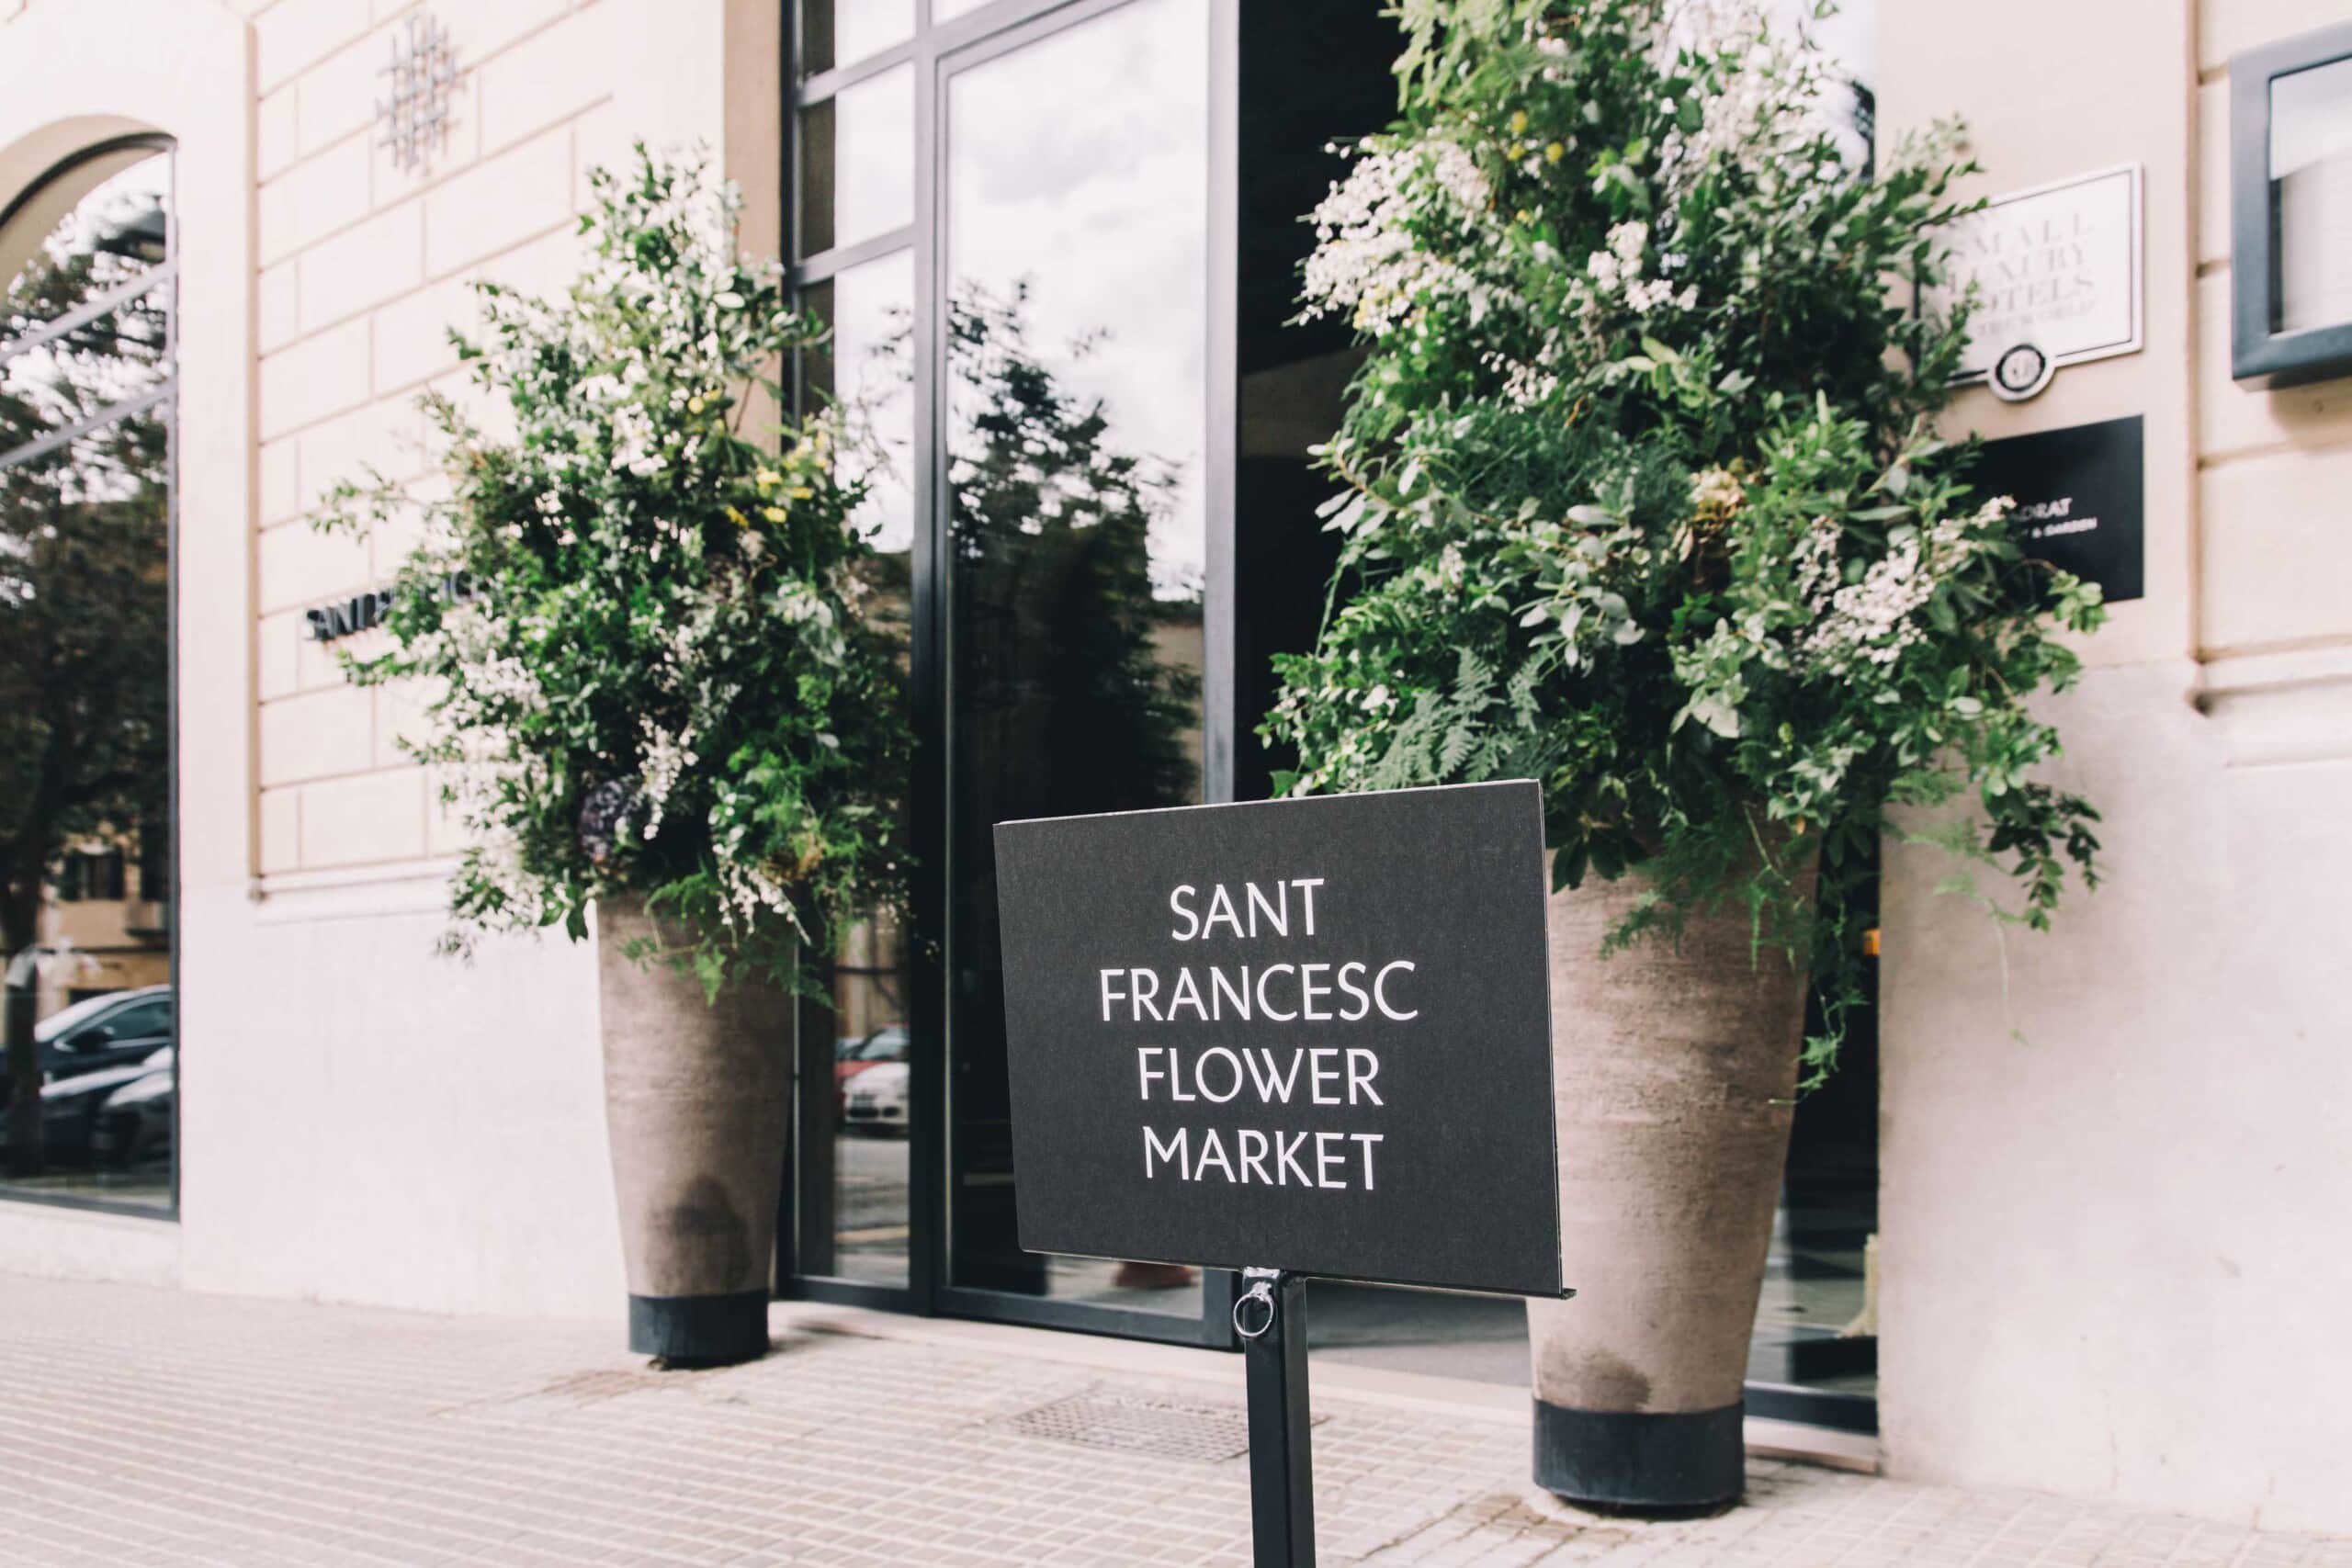 Sant Francesc Flower Market 2020